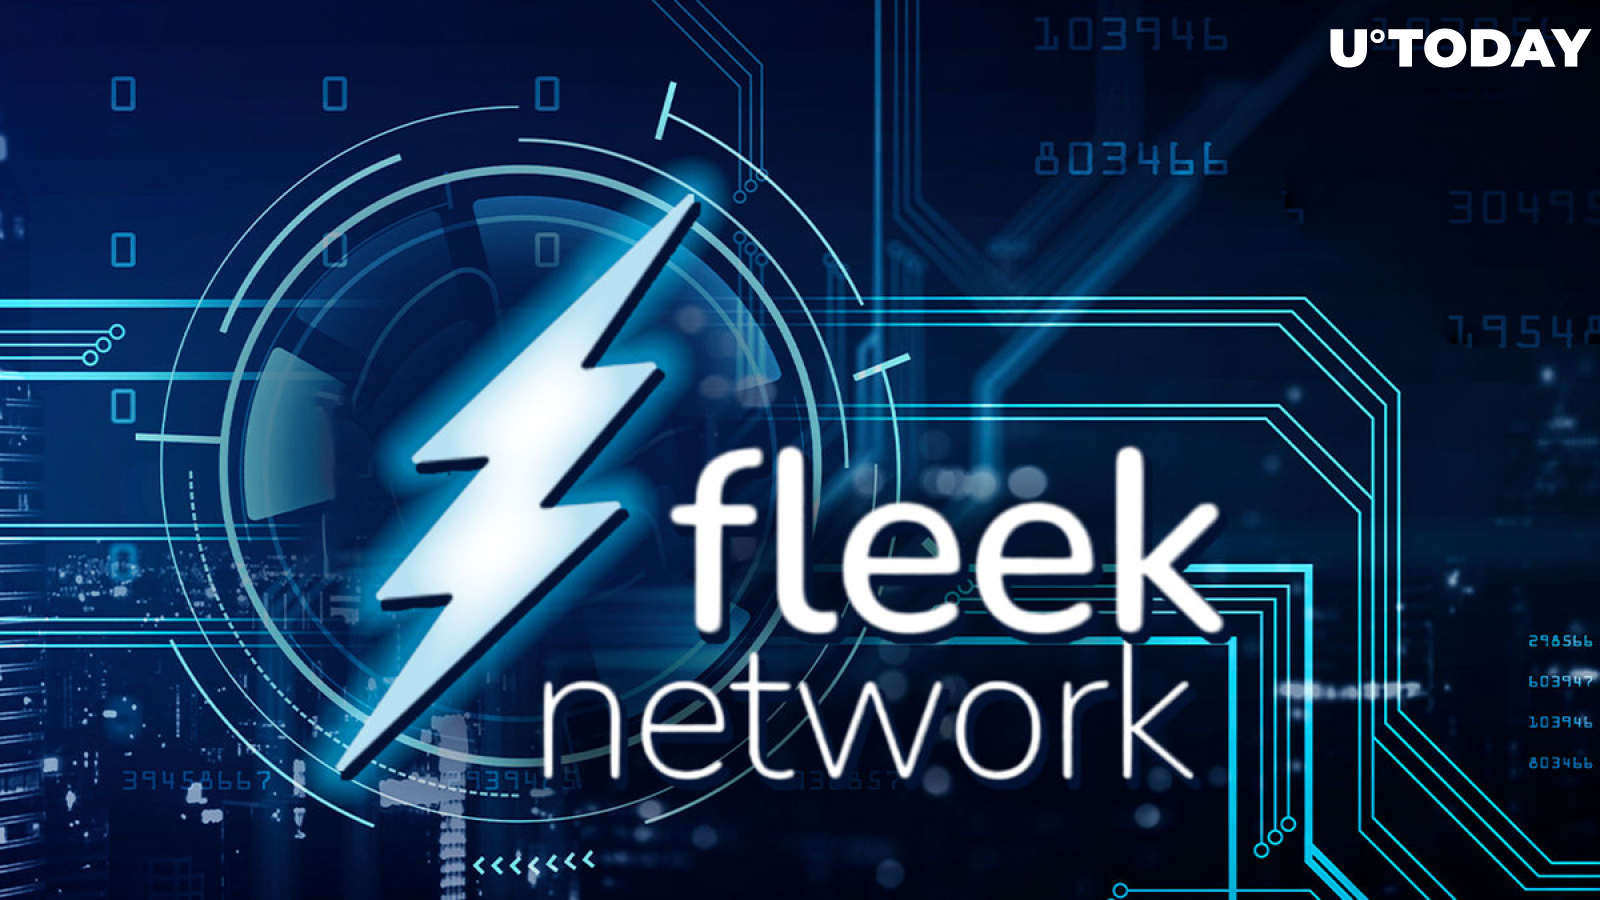 Fleek Network Releases Whitepaper for Decentralized Edge